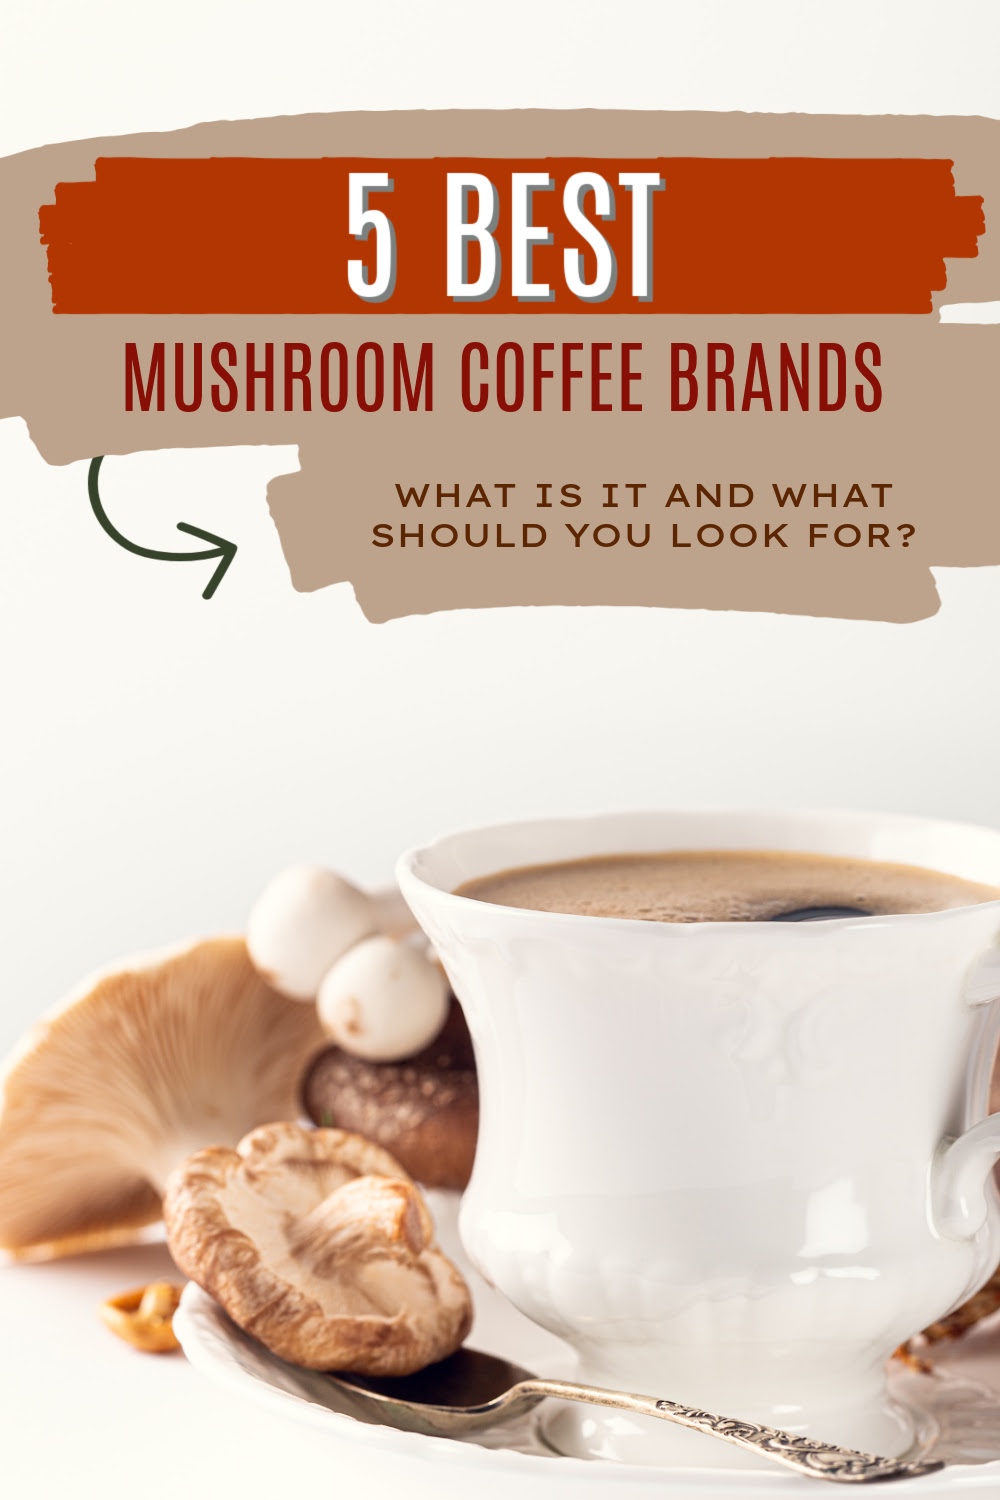 5 Best Mushroom Coffee Brands